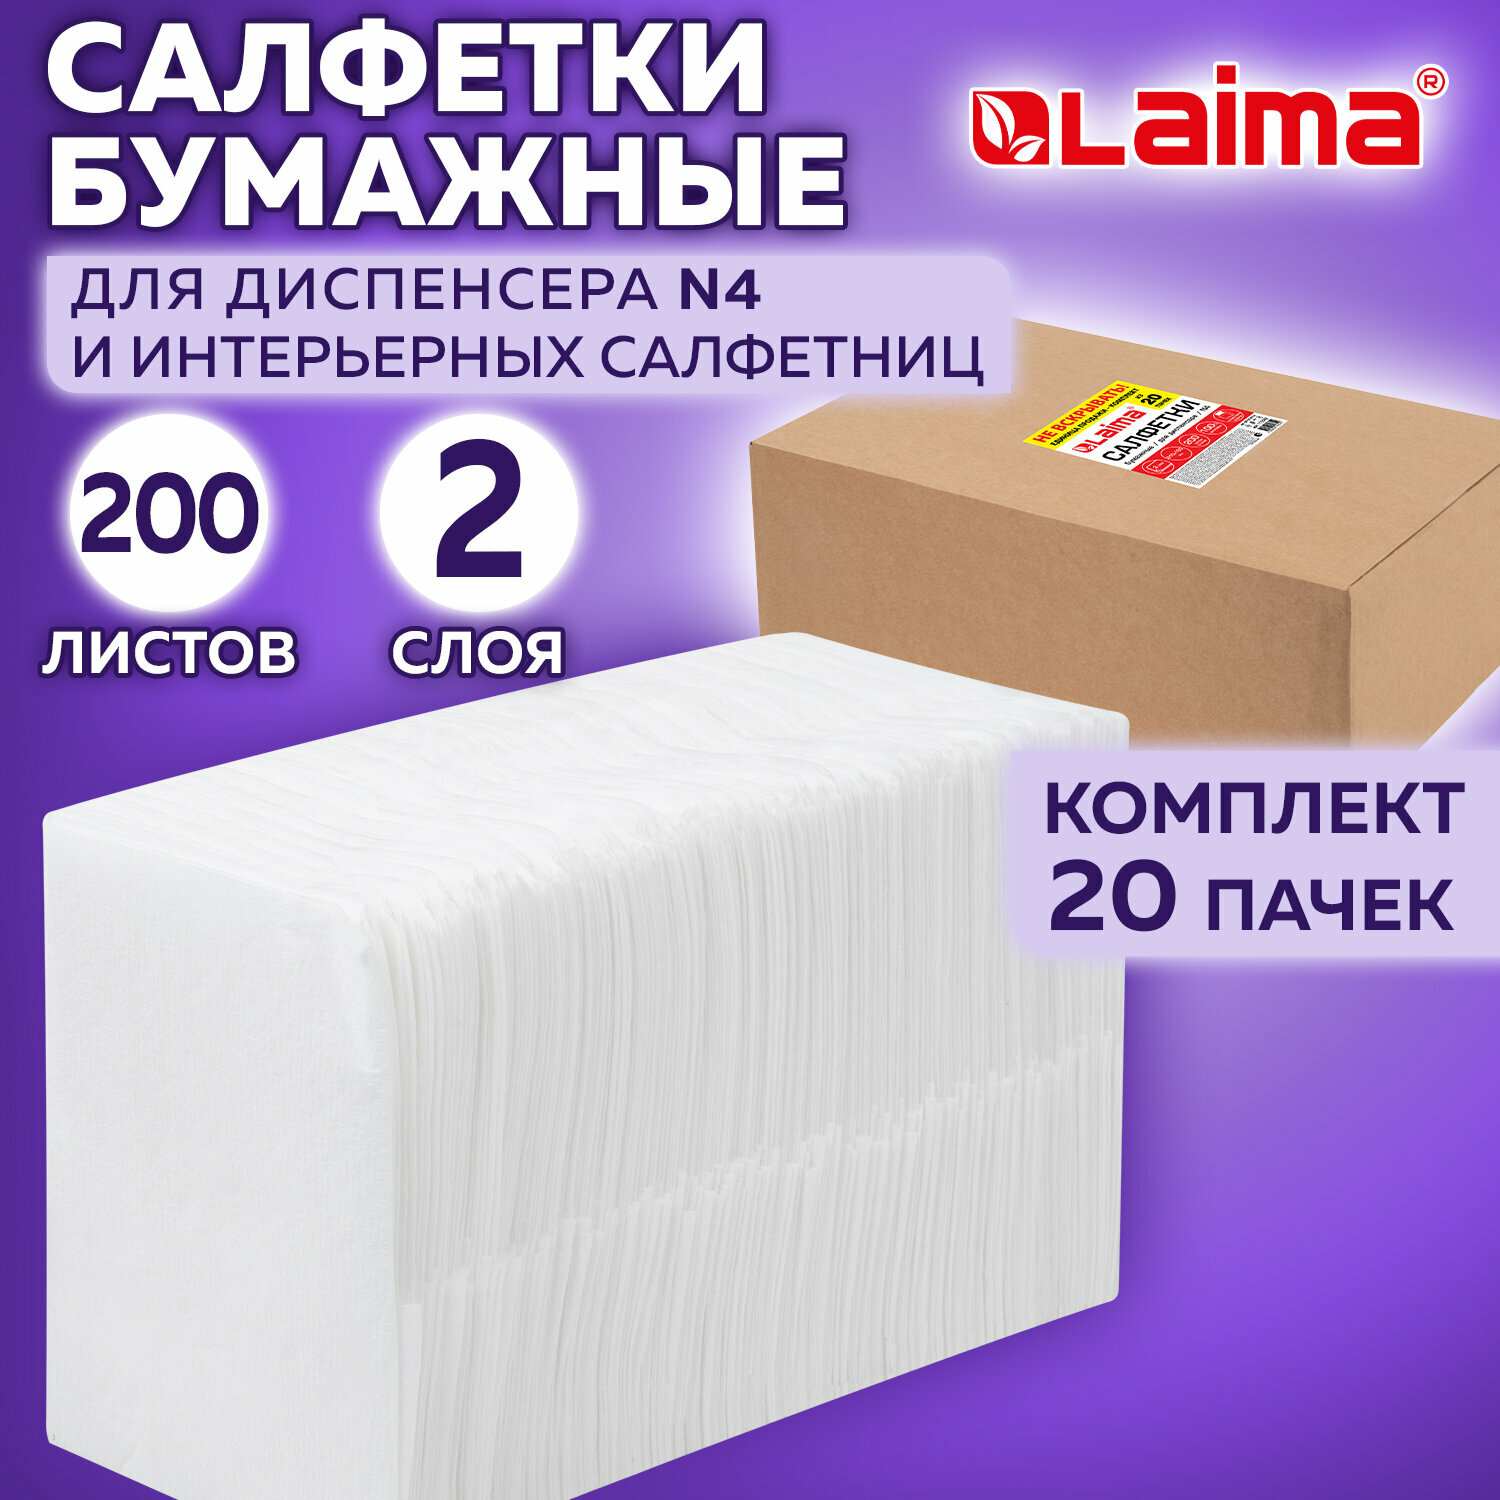 Салфетки бумажные для диспенсера (N4), LAIMA PREMIUM, комплект 20 пачек по 200 шт, 21х16,5 см, 2-слойные